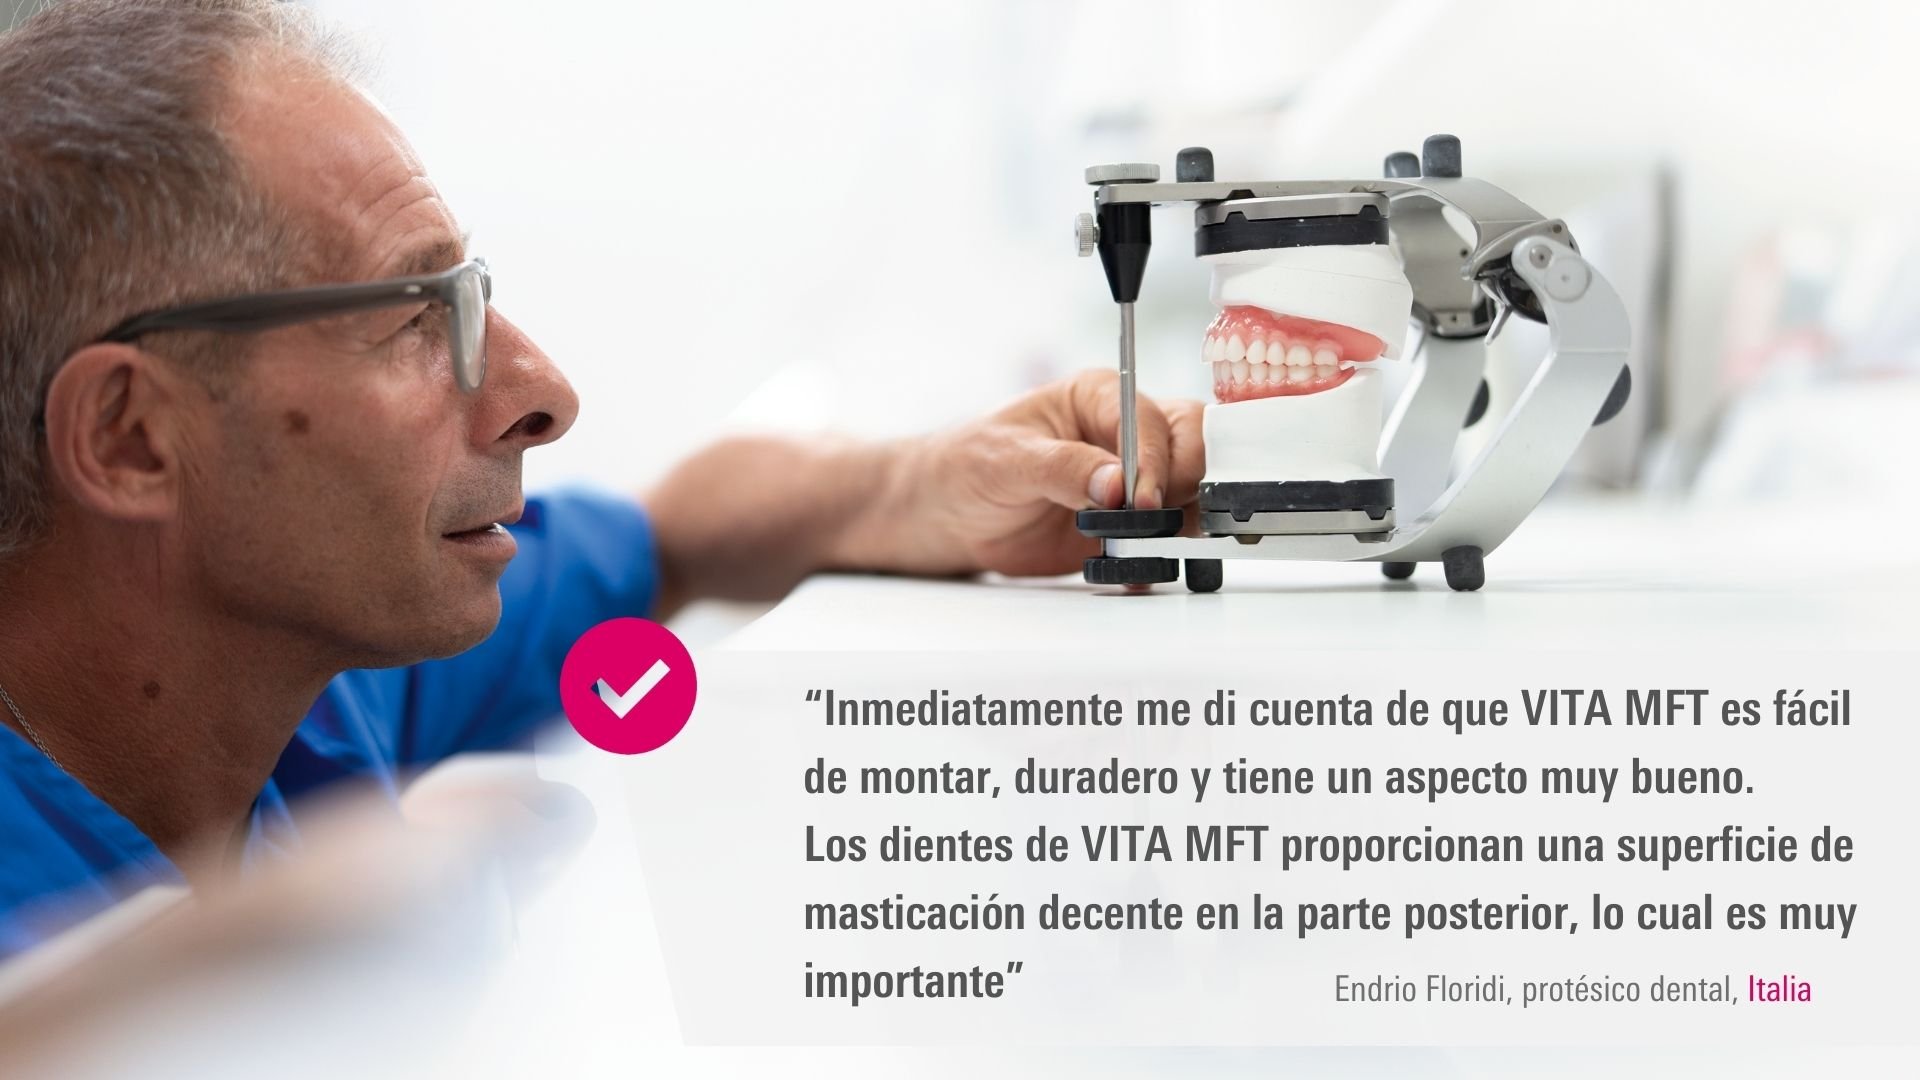 VITA MFT. Endrio Floridi, protésico dental, Italia